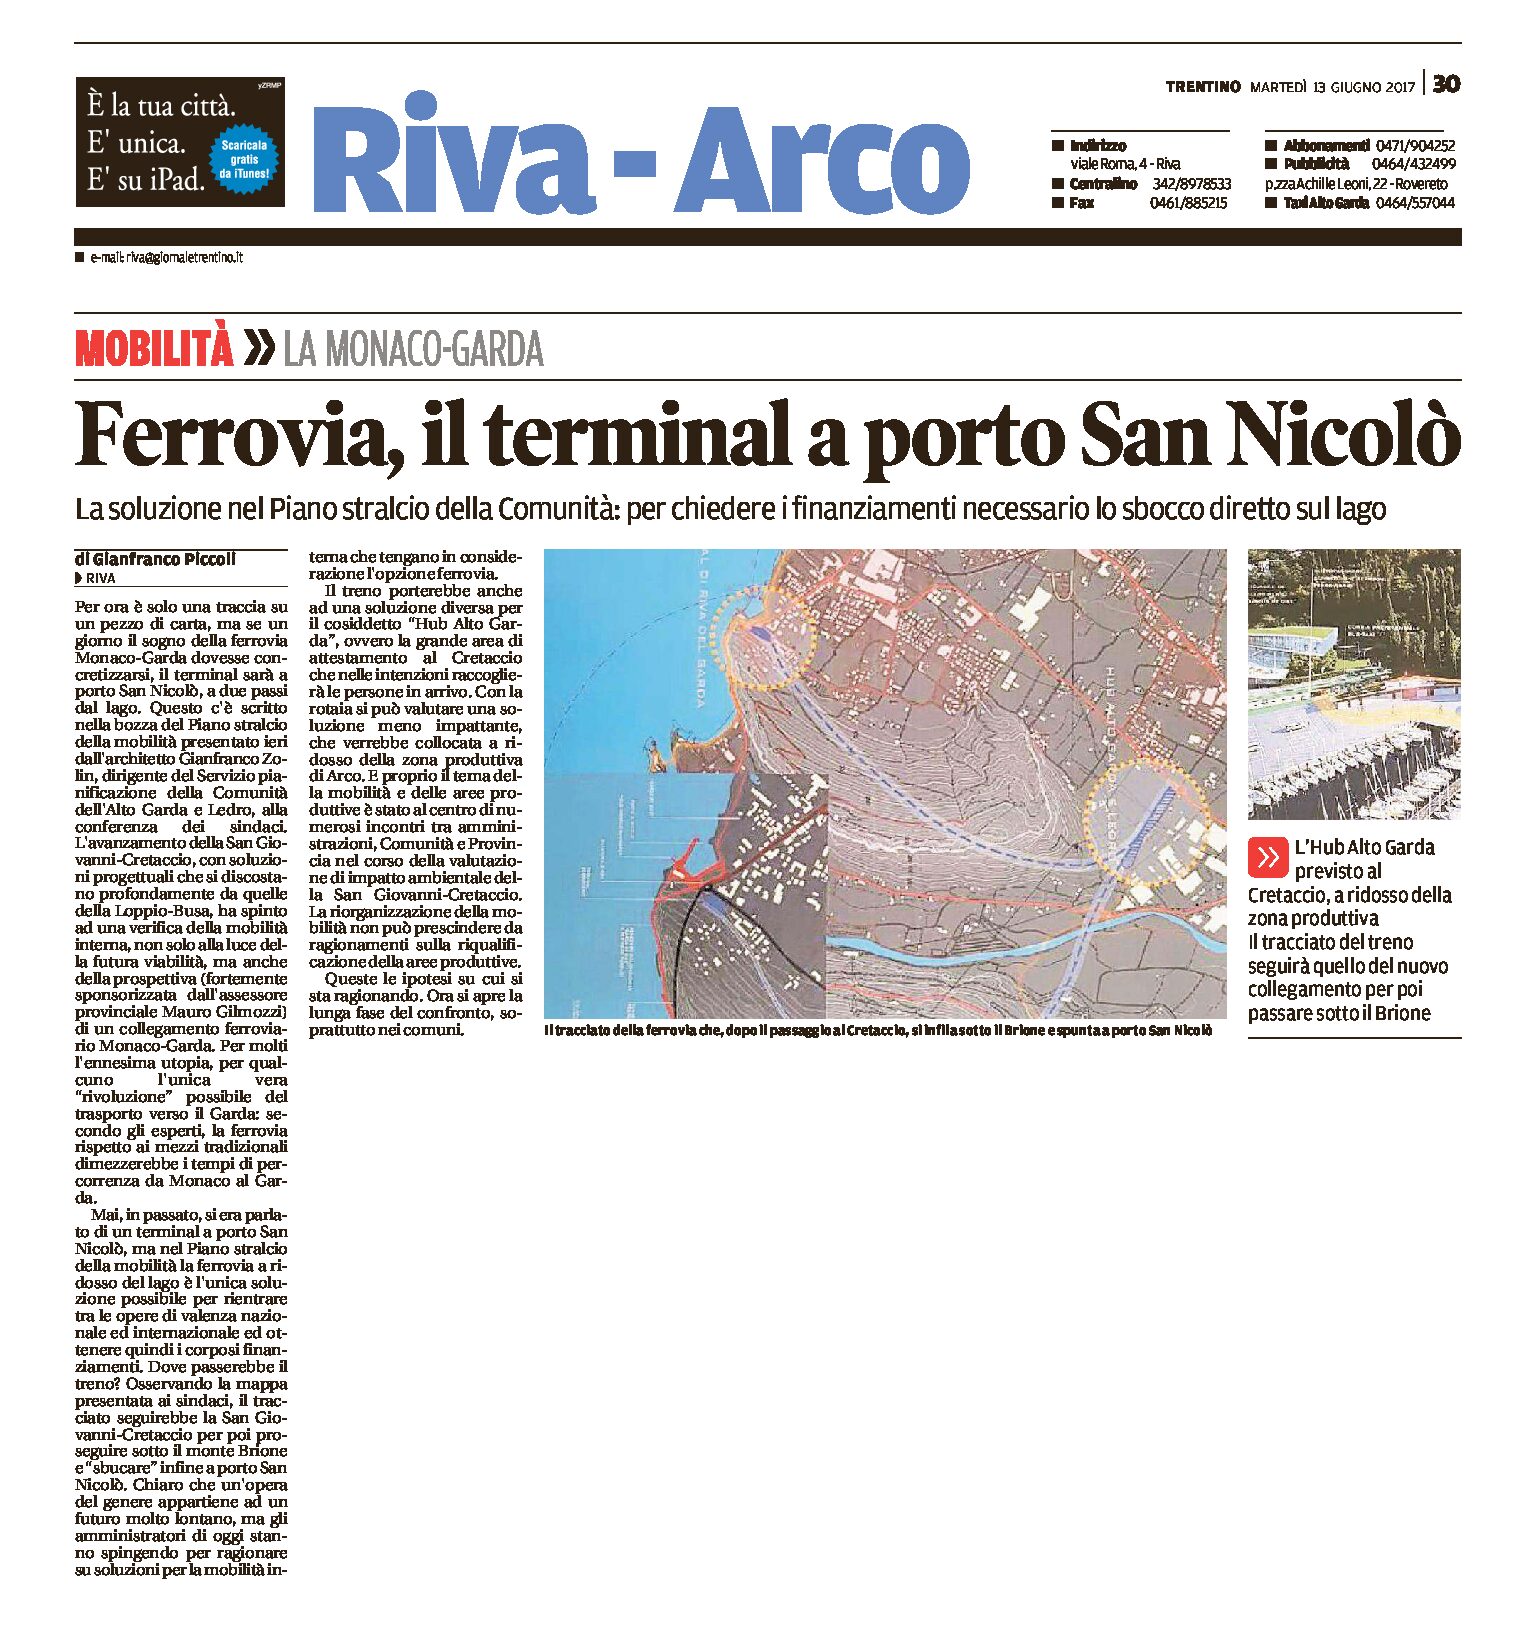 Ferrovia Monaco-Garda: il terminal a porto San Nicolò, per i finanziamenti